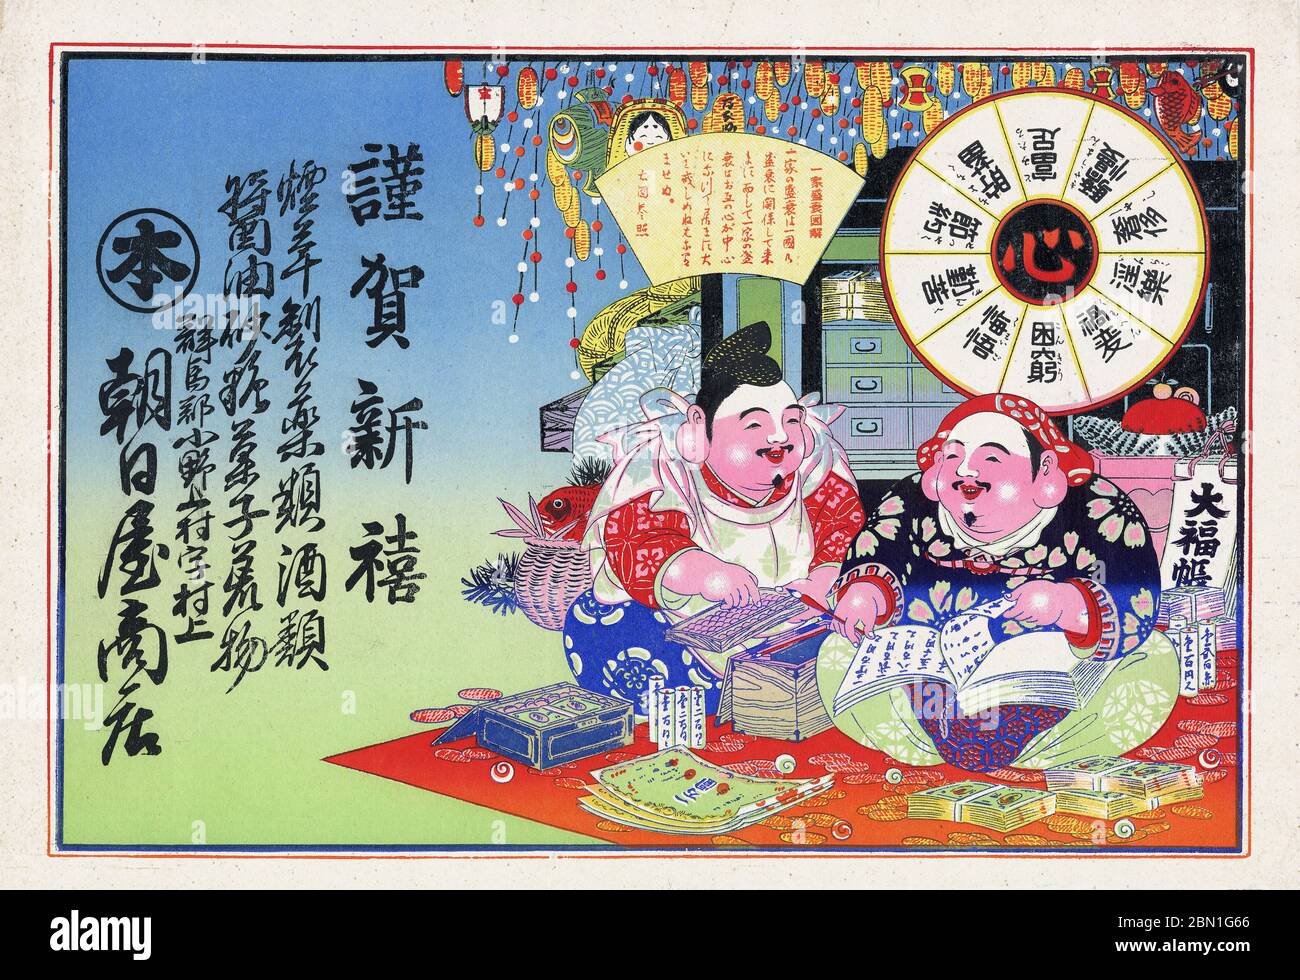 [ Japan 1900 - Japanische Glücksgötter ] - Hikifuda (引札), ein Print, der von lokalen Geschäften als Werbeflyer verwendet wird. Sie waren von den 1800er bis in die 1920er Jahre populär. Dieser Druck zeigt Daikokuten (大黒天, rechts) und Ebisu (恵比寿), zwei der Sieben Glücksgötter (七福神 Shichi Fukujin), die den Menschen Glück geben sollen. Sie waren ein wesentlicher Bestandteil der traditionellen japanischen Neujahrsfeiern. 20. Jahrhundert Vintage Werbung Flyer. Stockfoto